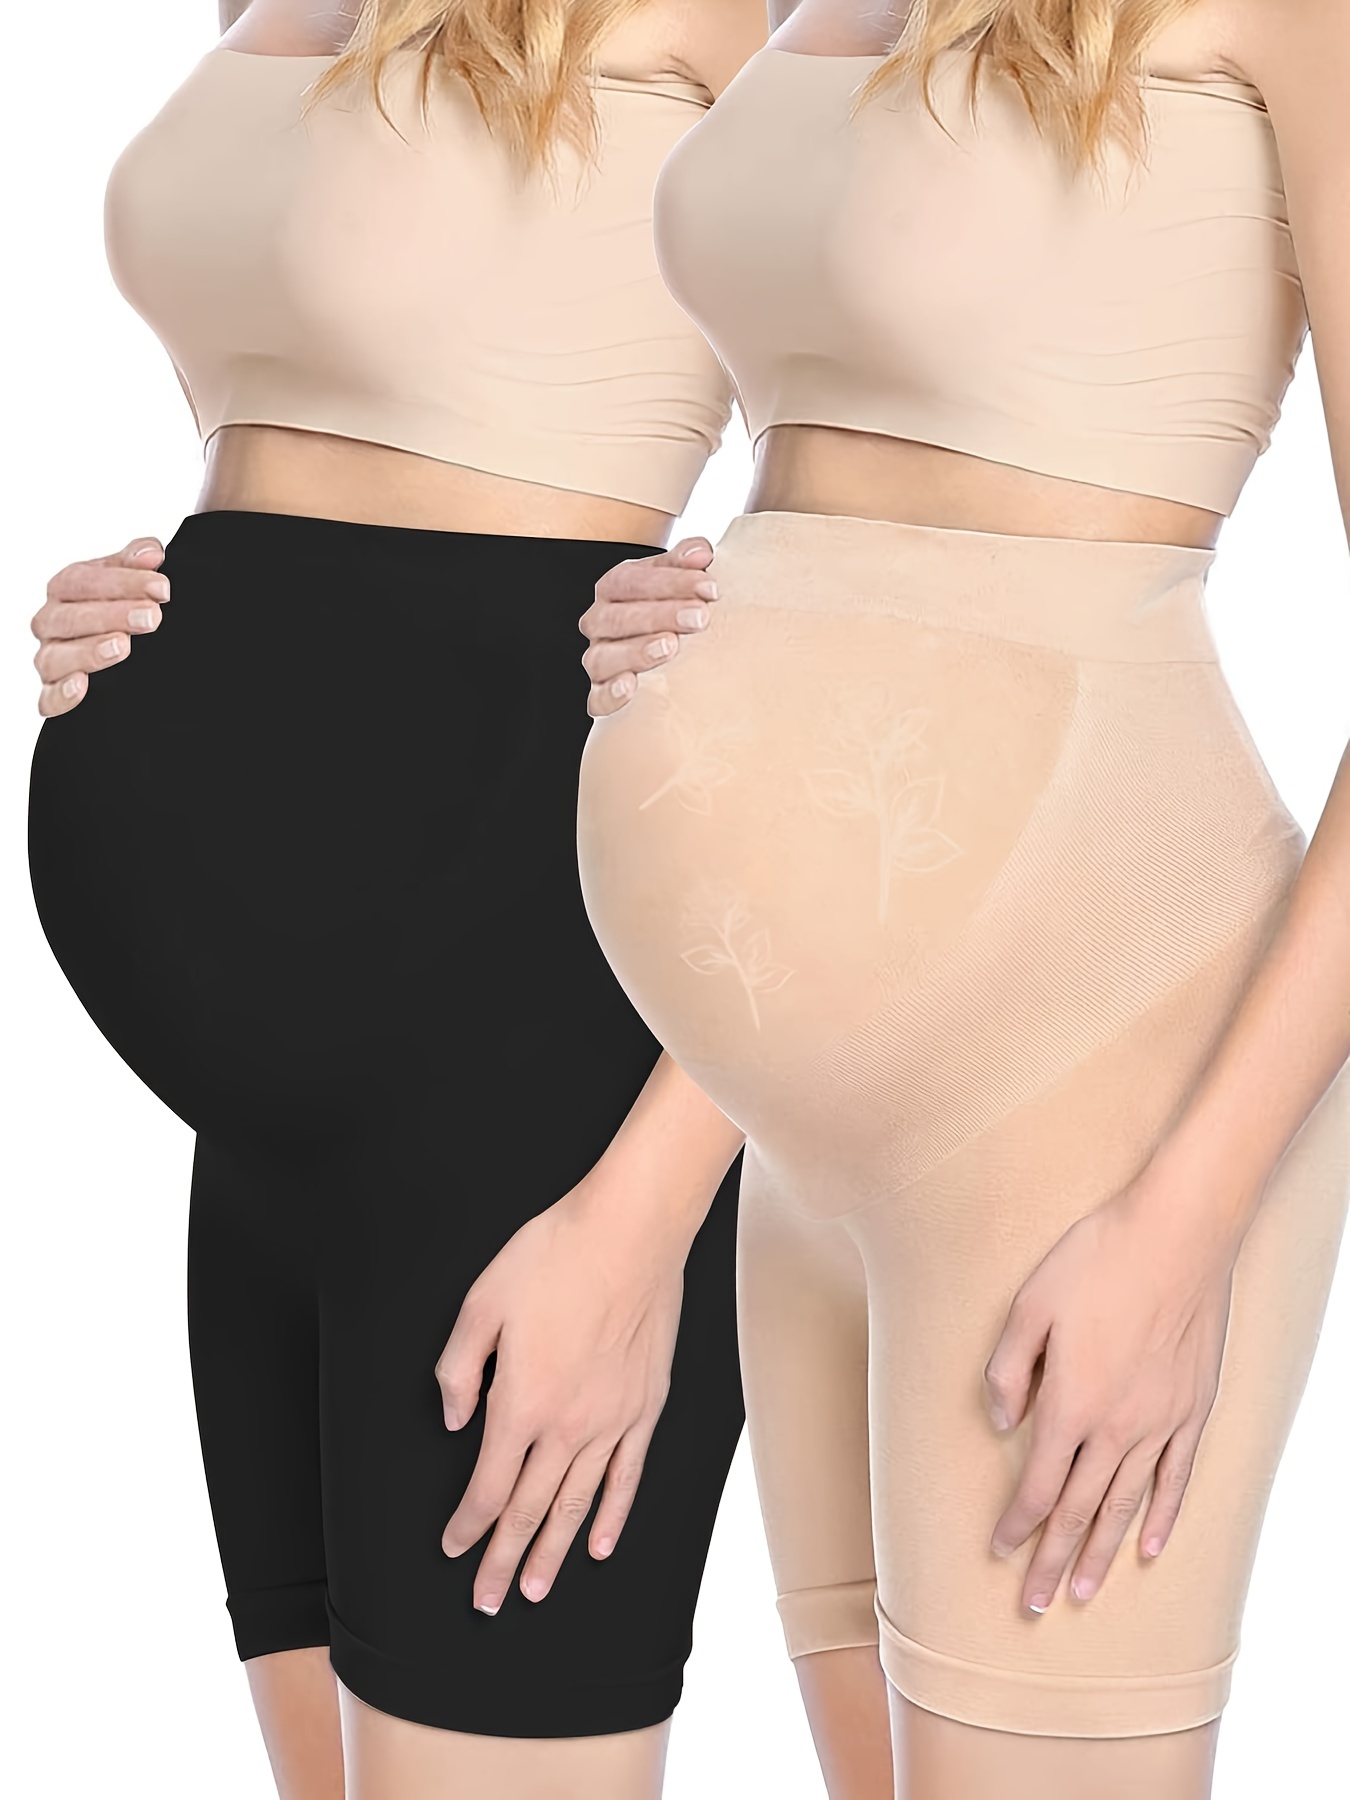 Pregnant Women's High Waist Belly Support Underwear - Temu